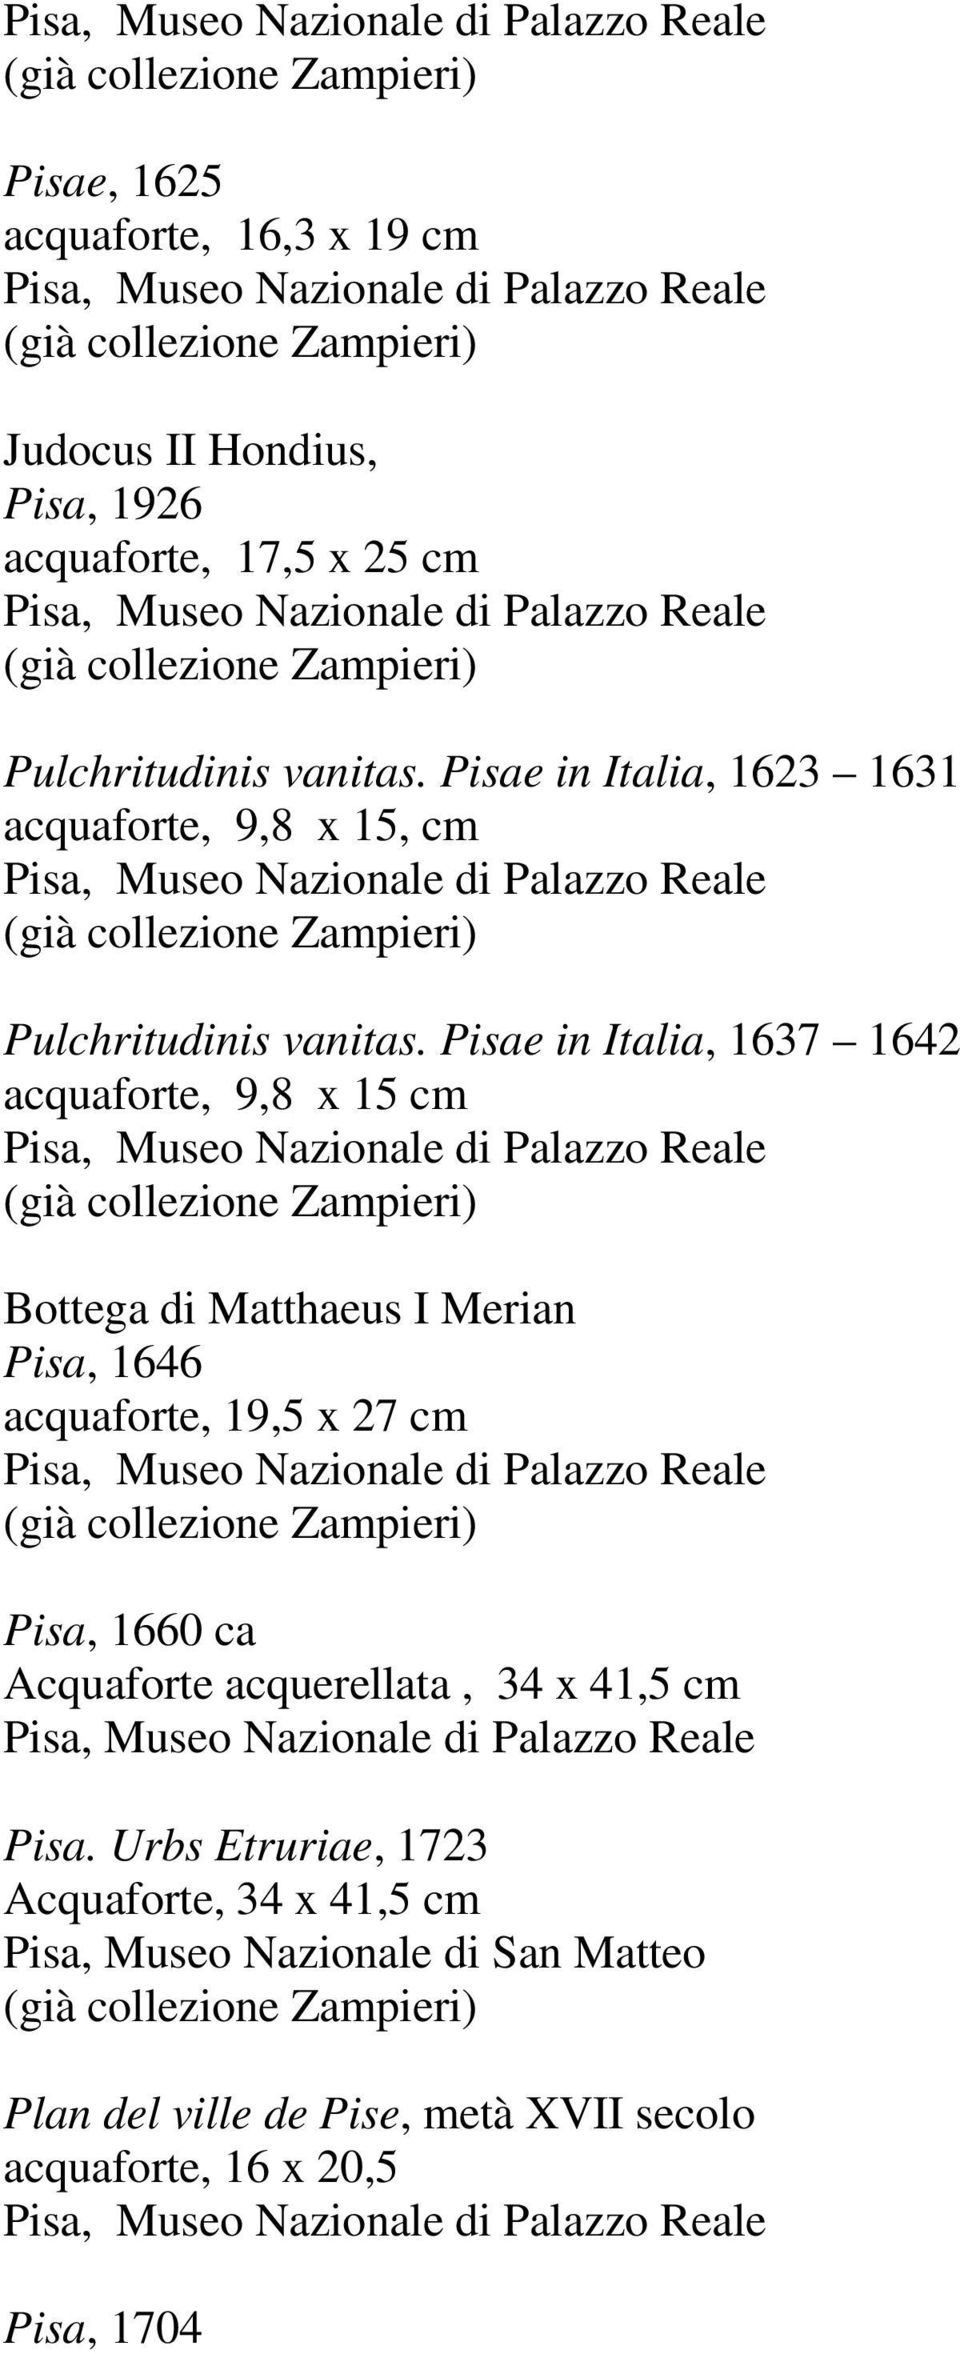 Pisae in Italia, 1637 1642 acquaforte, 9,8 x 15 cm Bottega di Matthaeus I Merian Pisa, 1646 acquaforte, 19,5 x 27 cm Pisa, 1660 ca